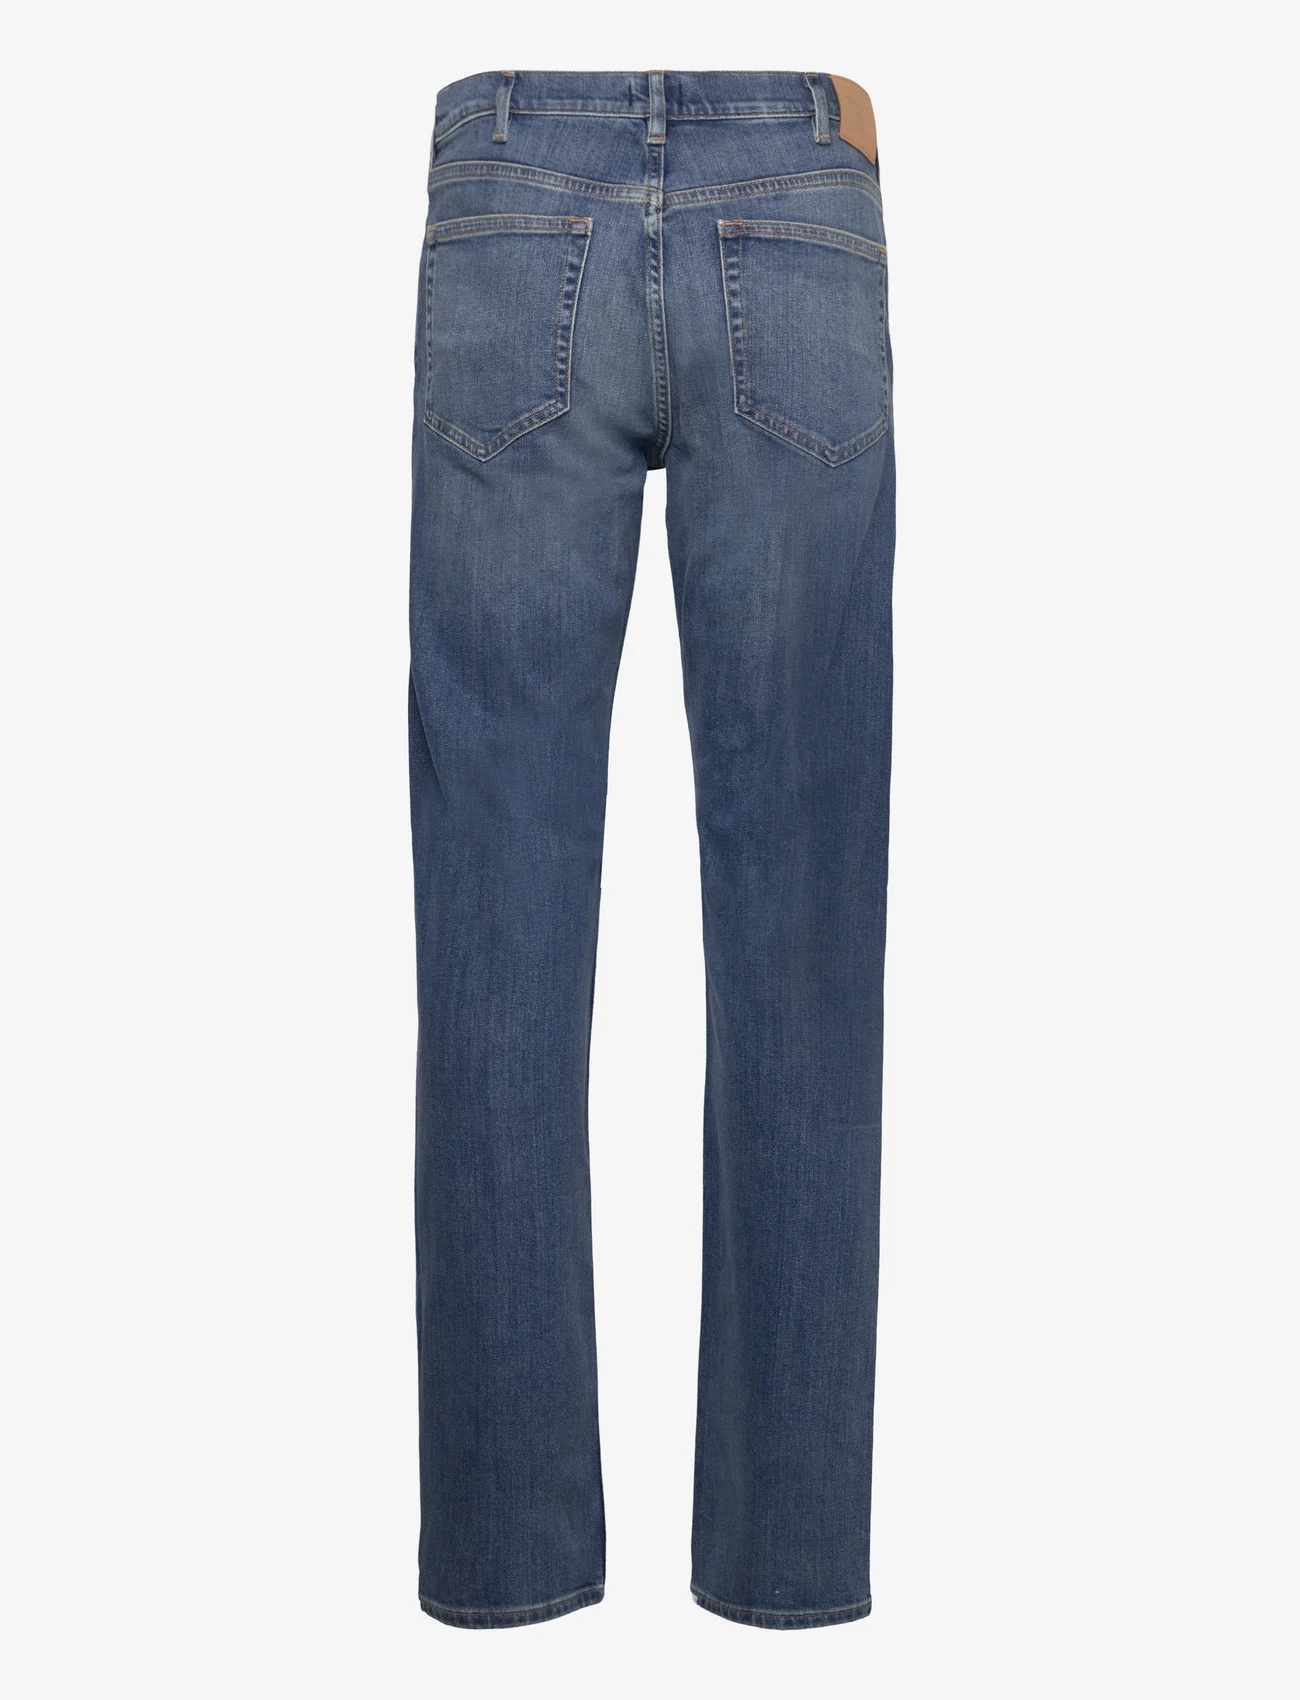 GANT - REGULAR GANT JEANS - regular jeans - mid blue worn in - 1